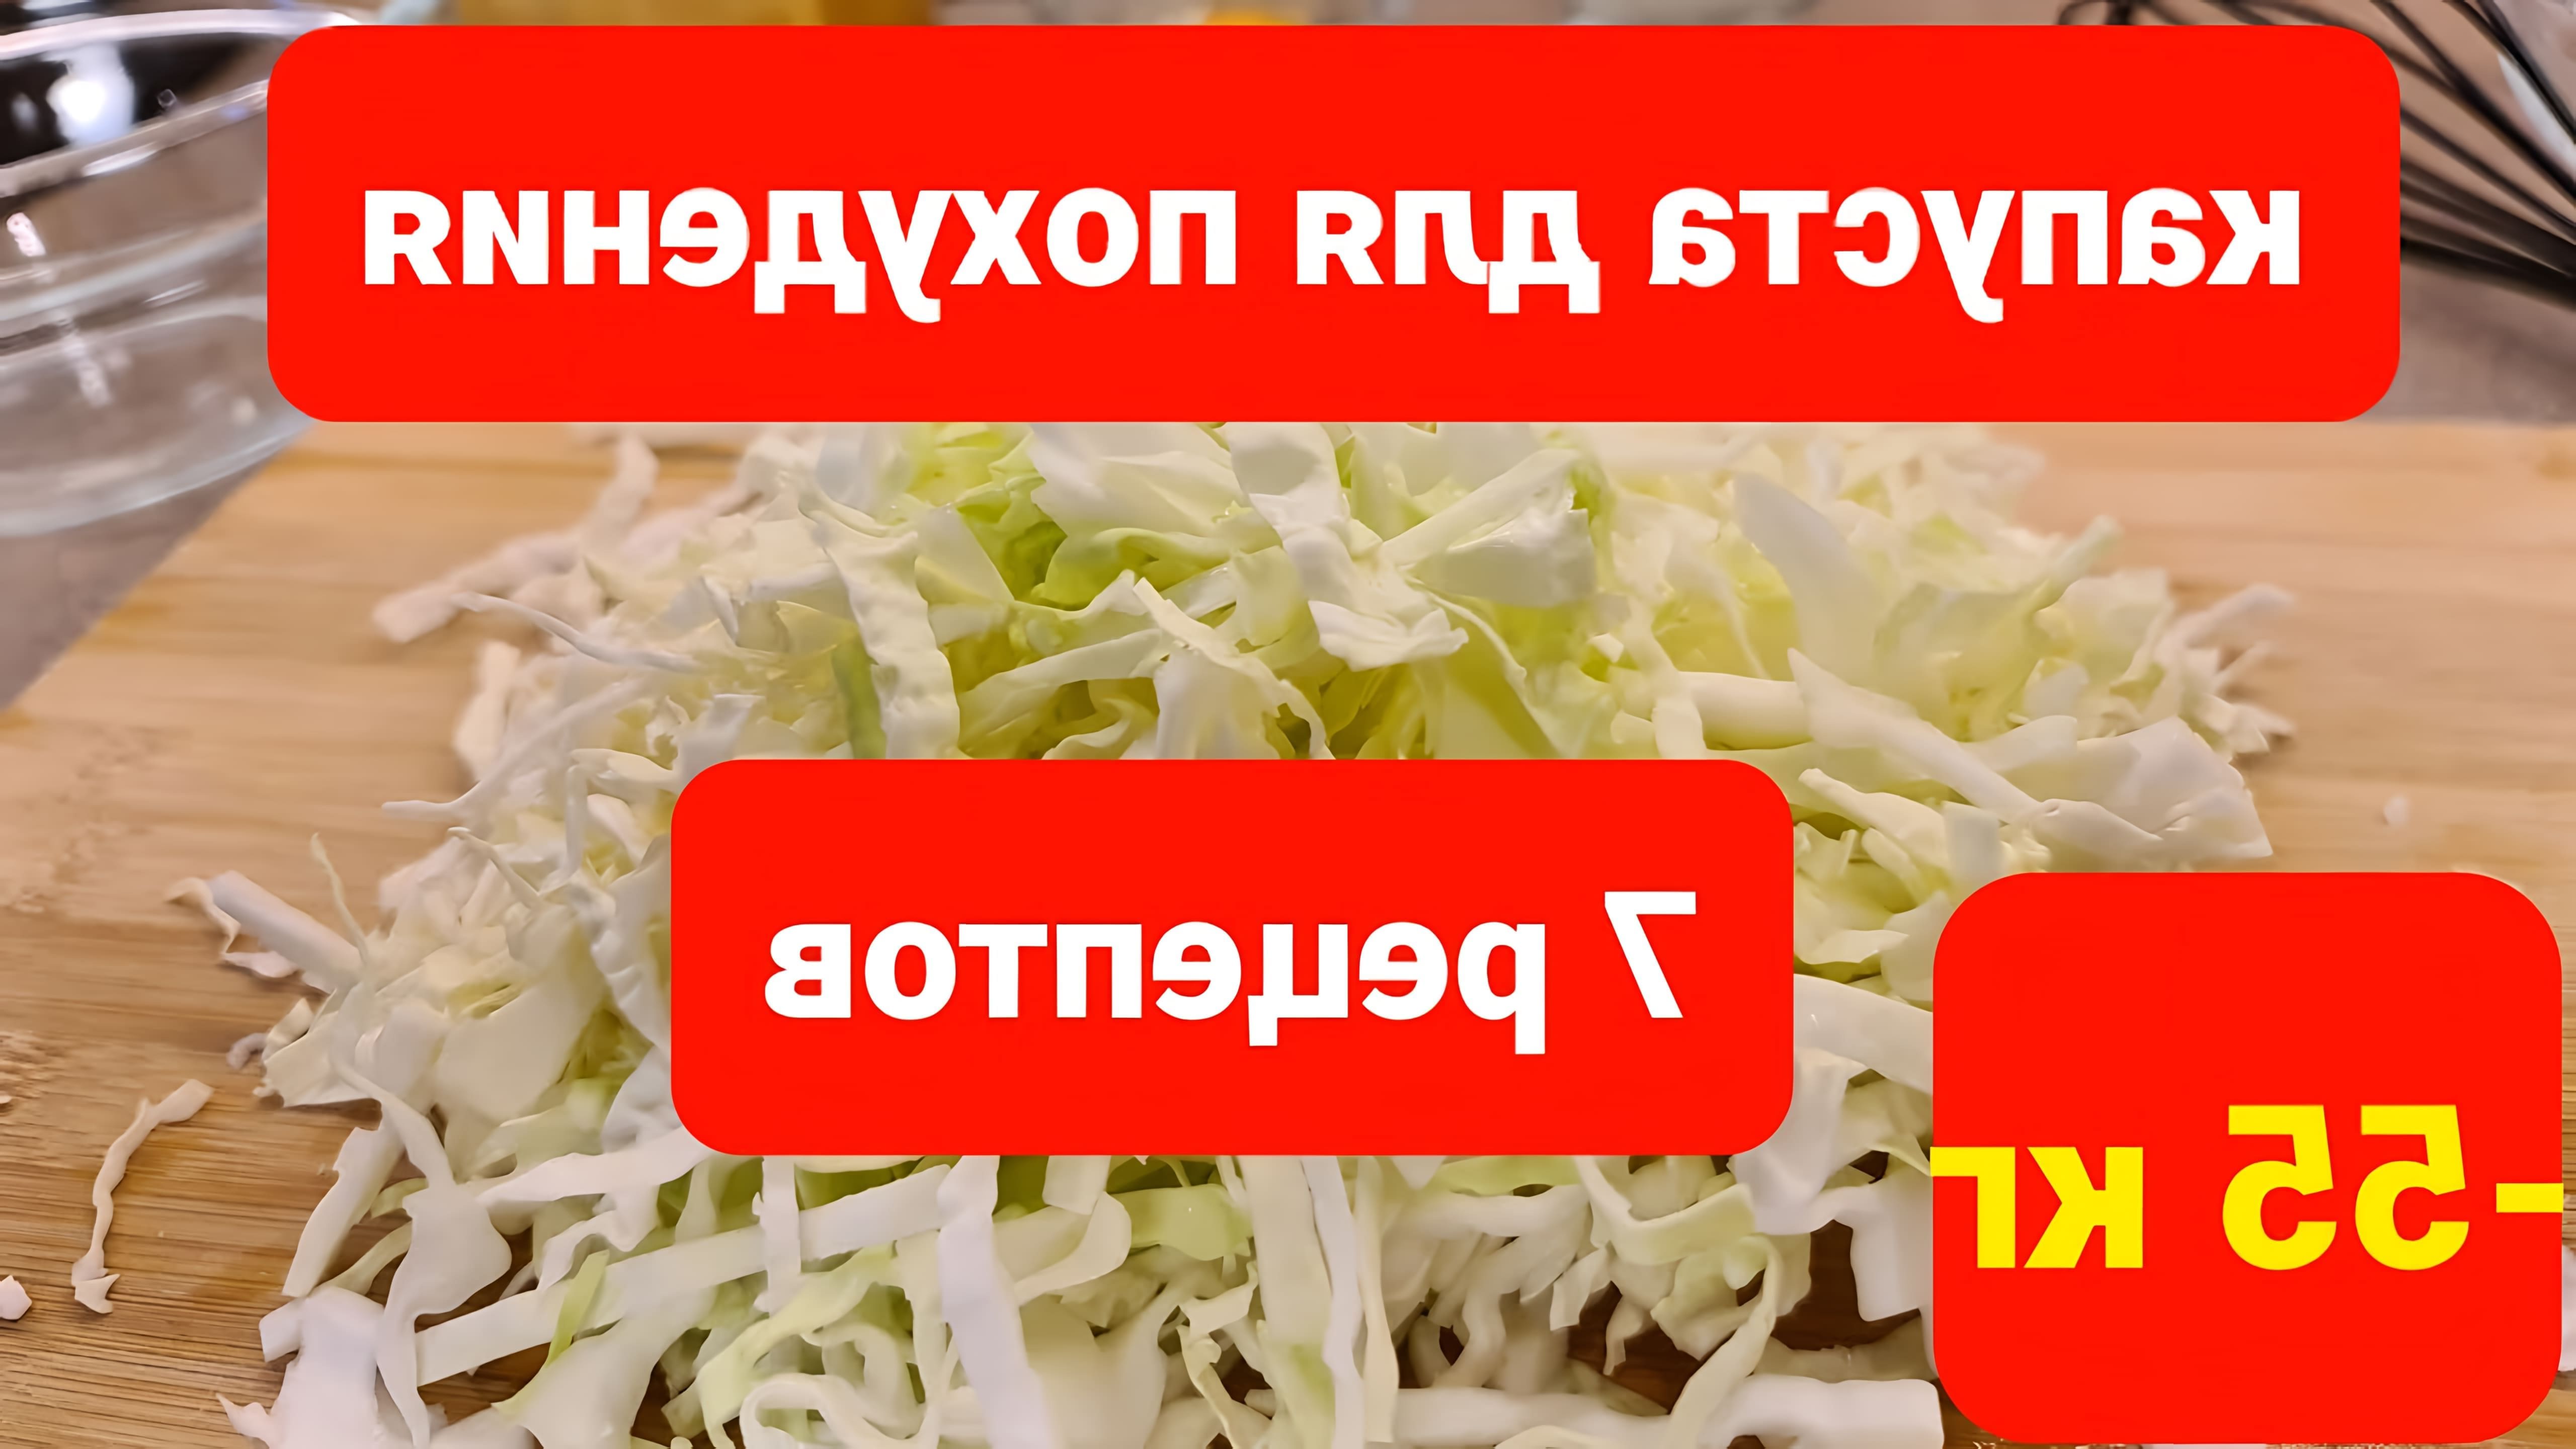 В этом видео Мария Мироновна делится семью рецептами приготовления капусты